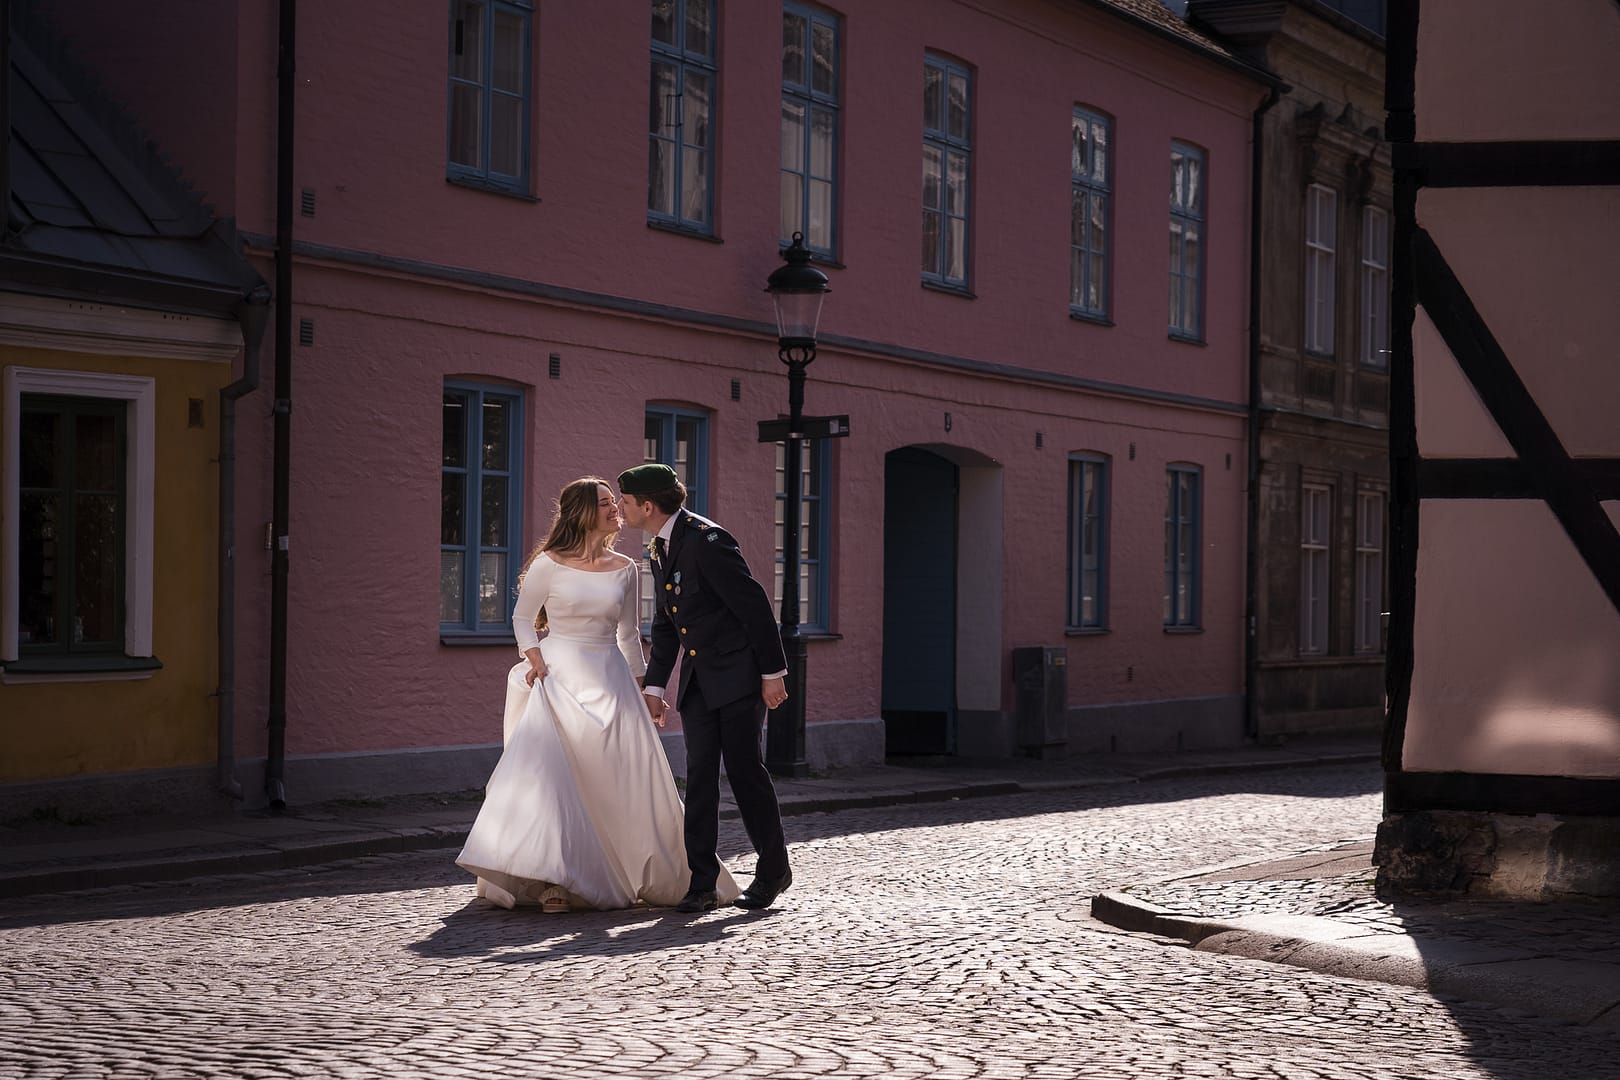 Bröllop i Lund gamla stan; Bröllopsfotograf Lund